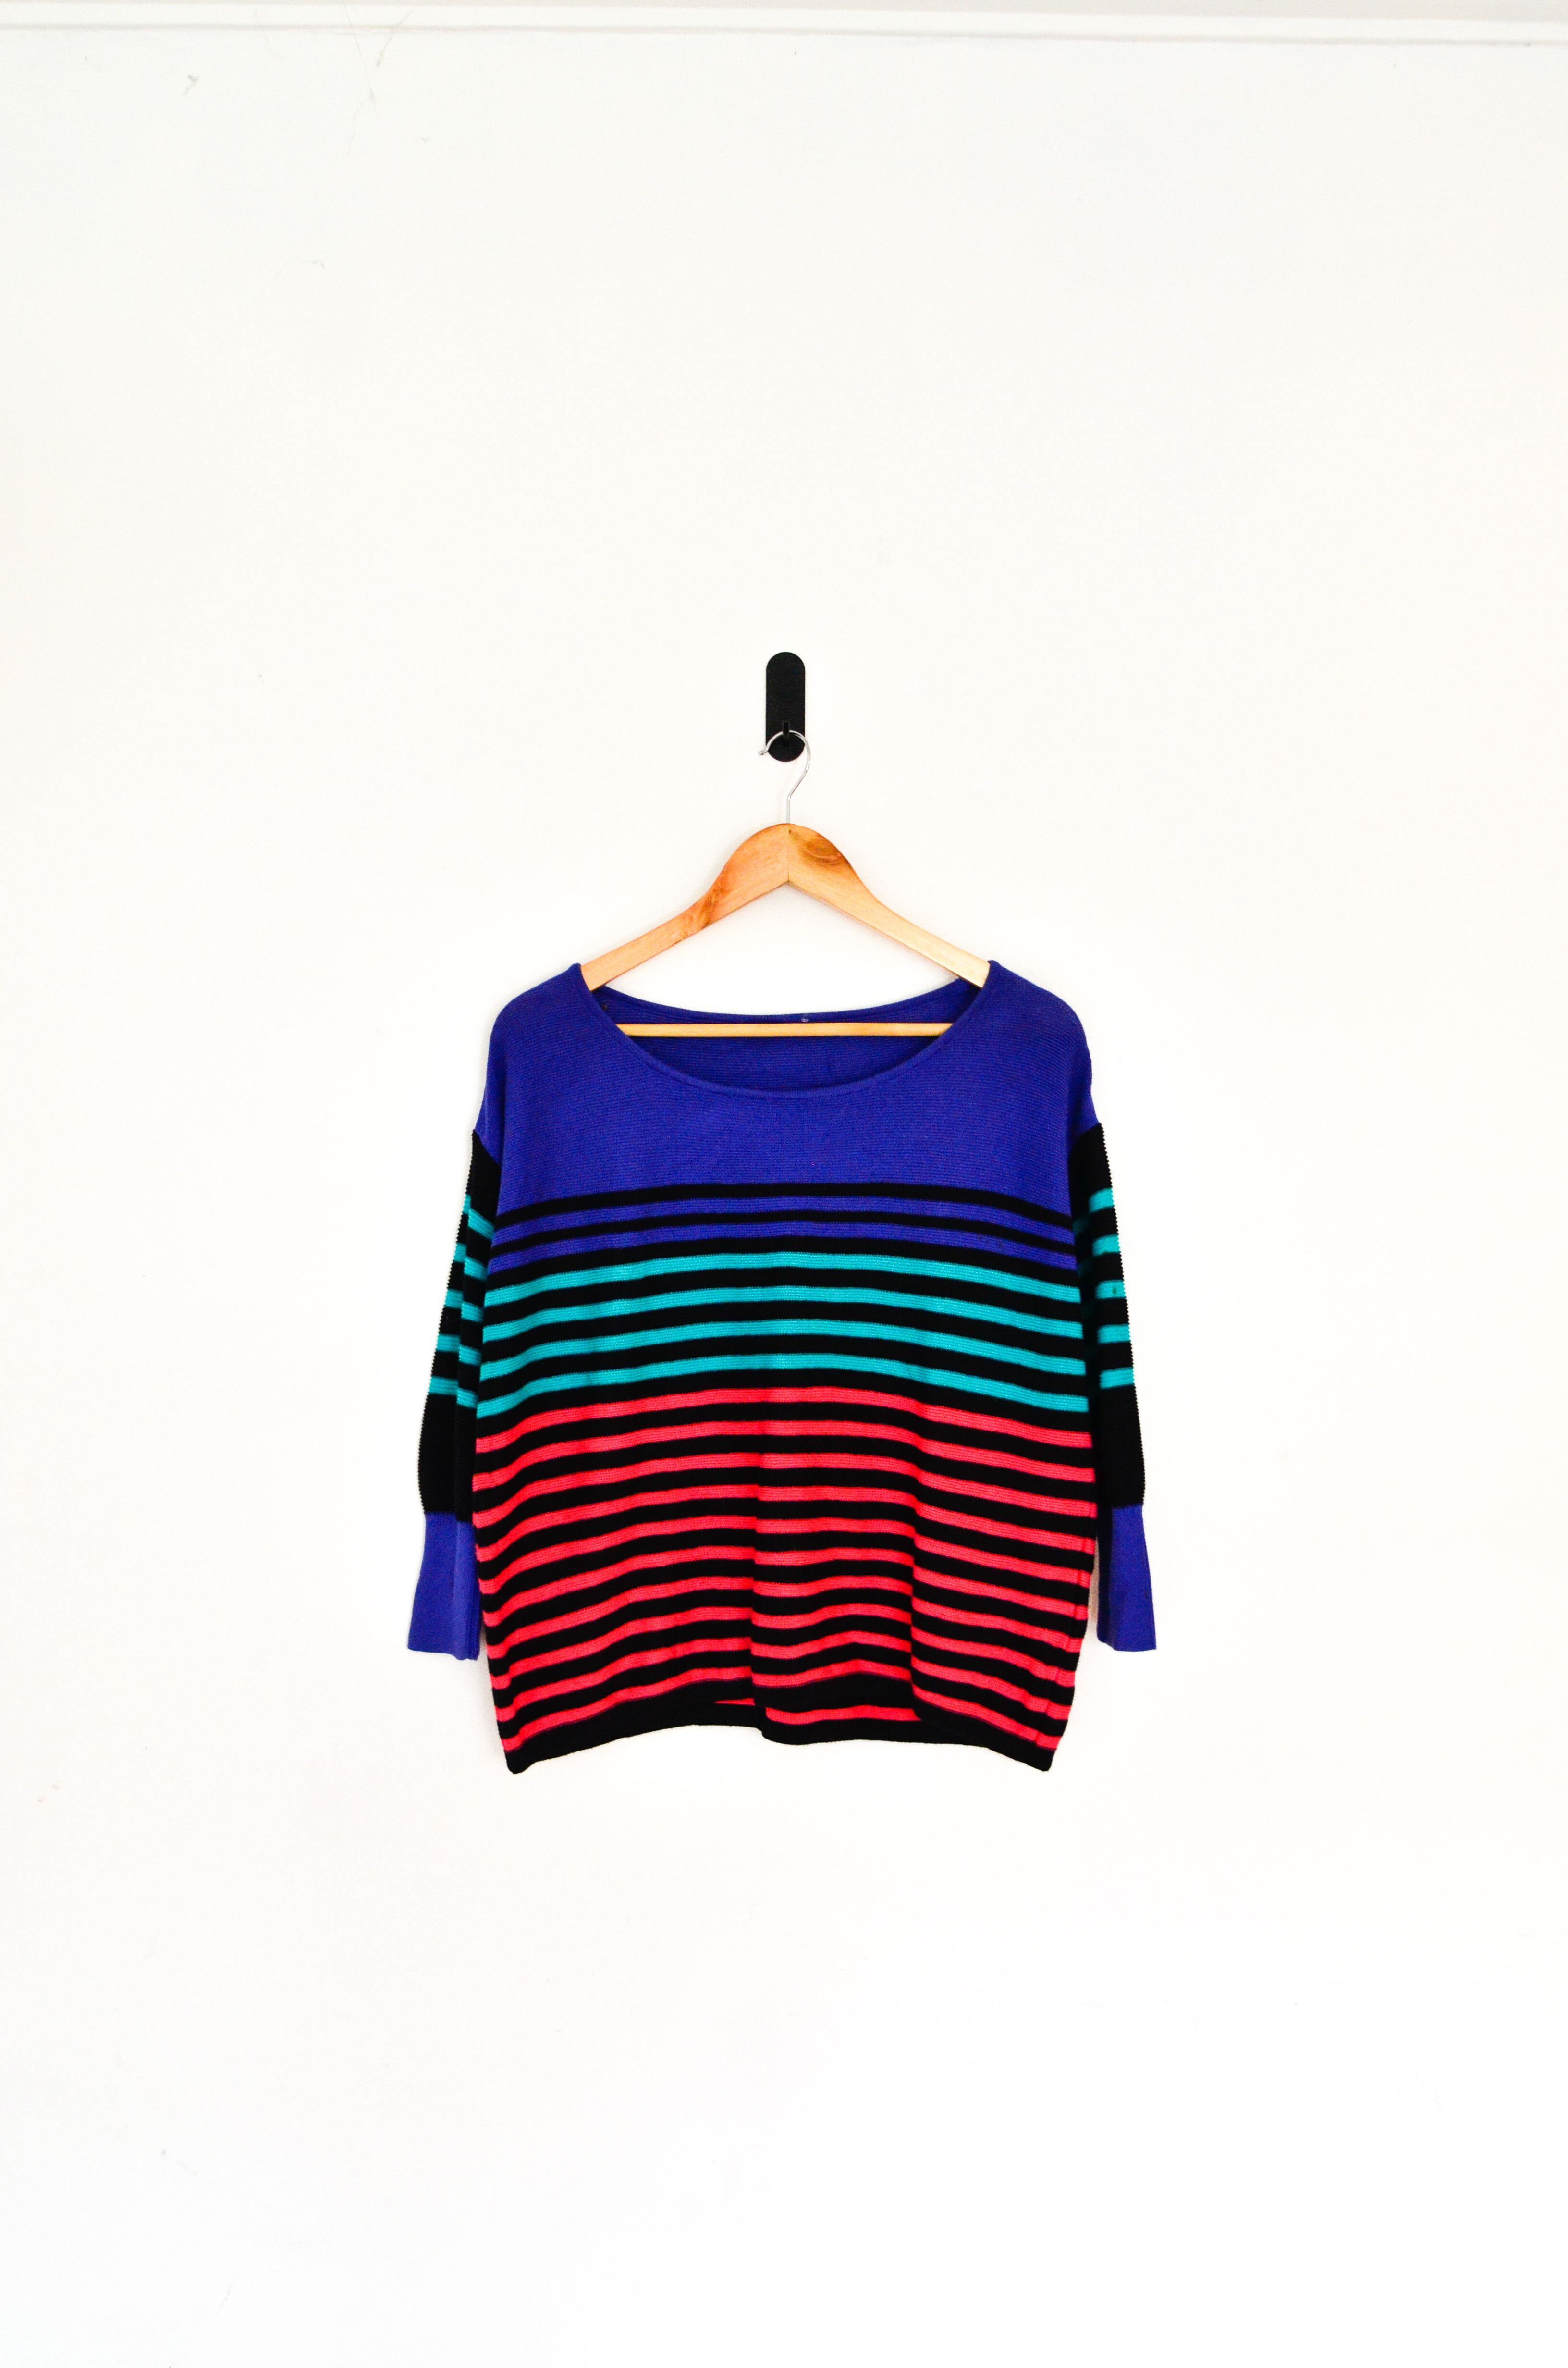 Sweater crop rayado multicolor